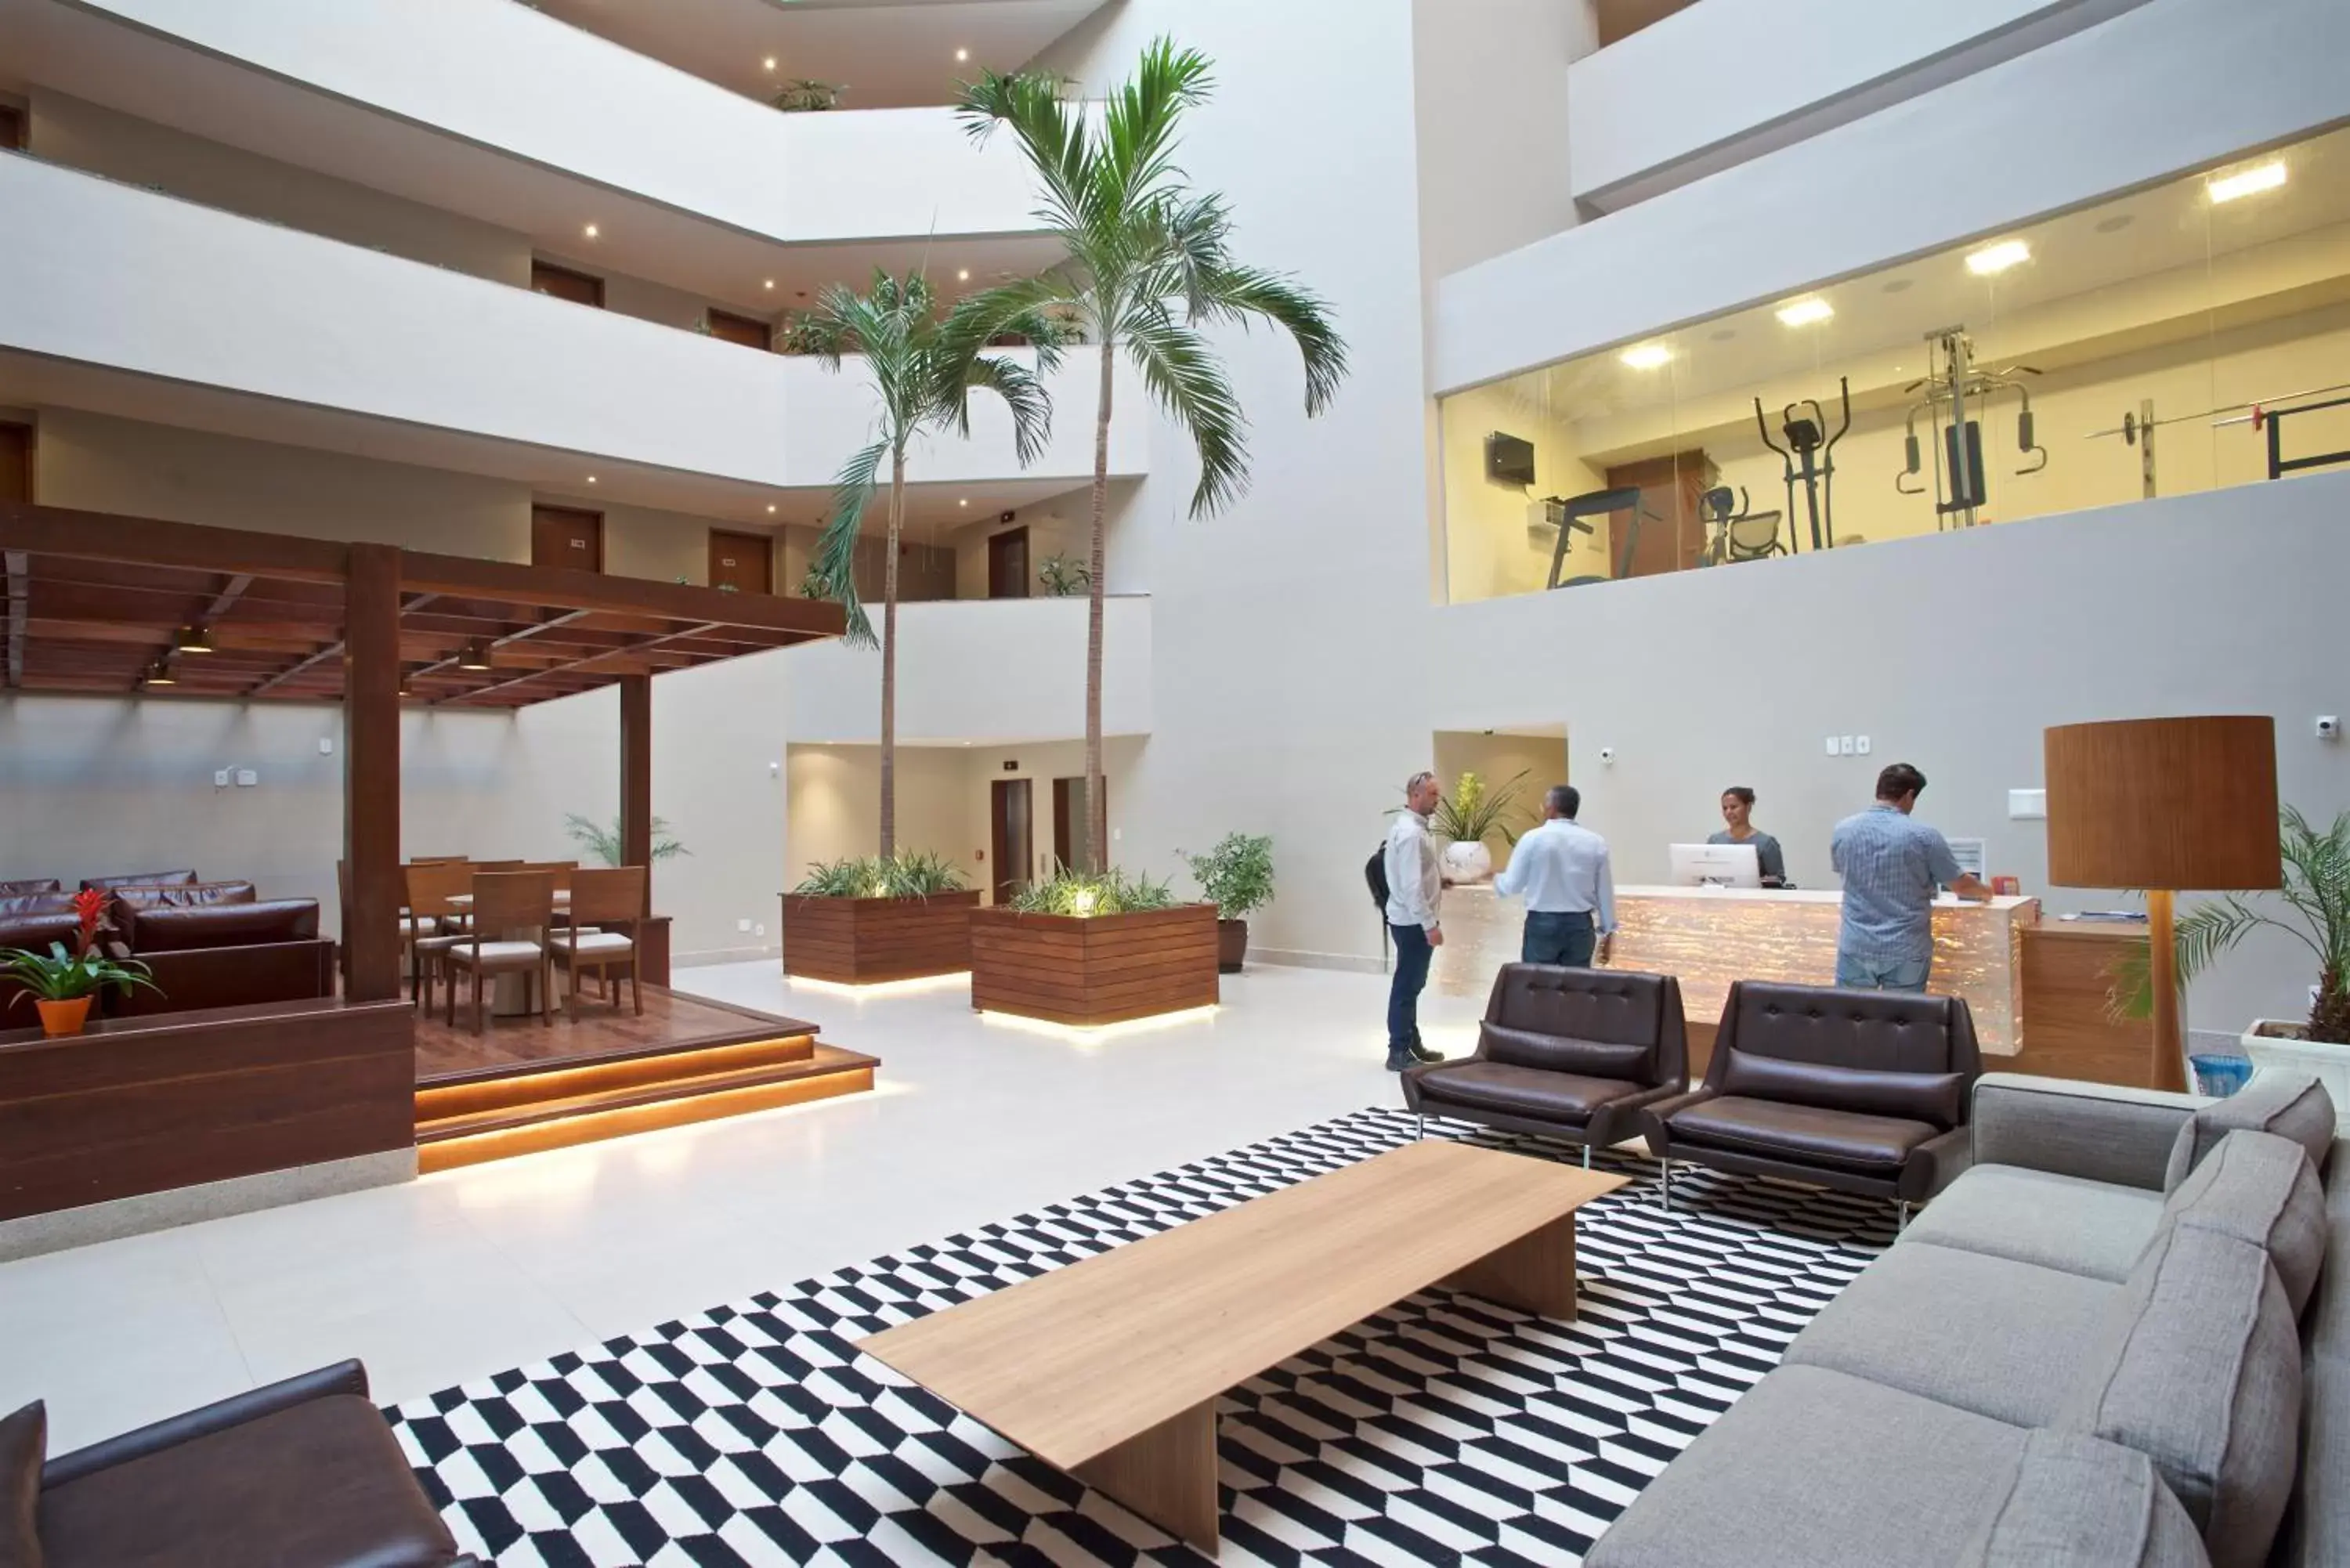 Lobby or reception in Marano Hotel